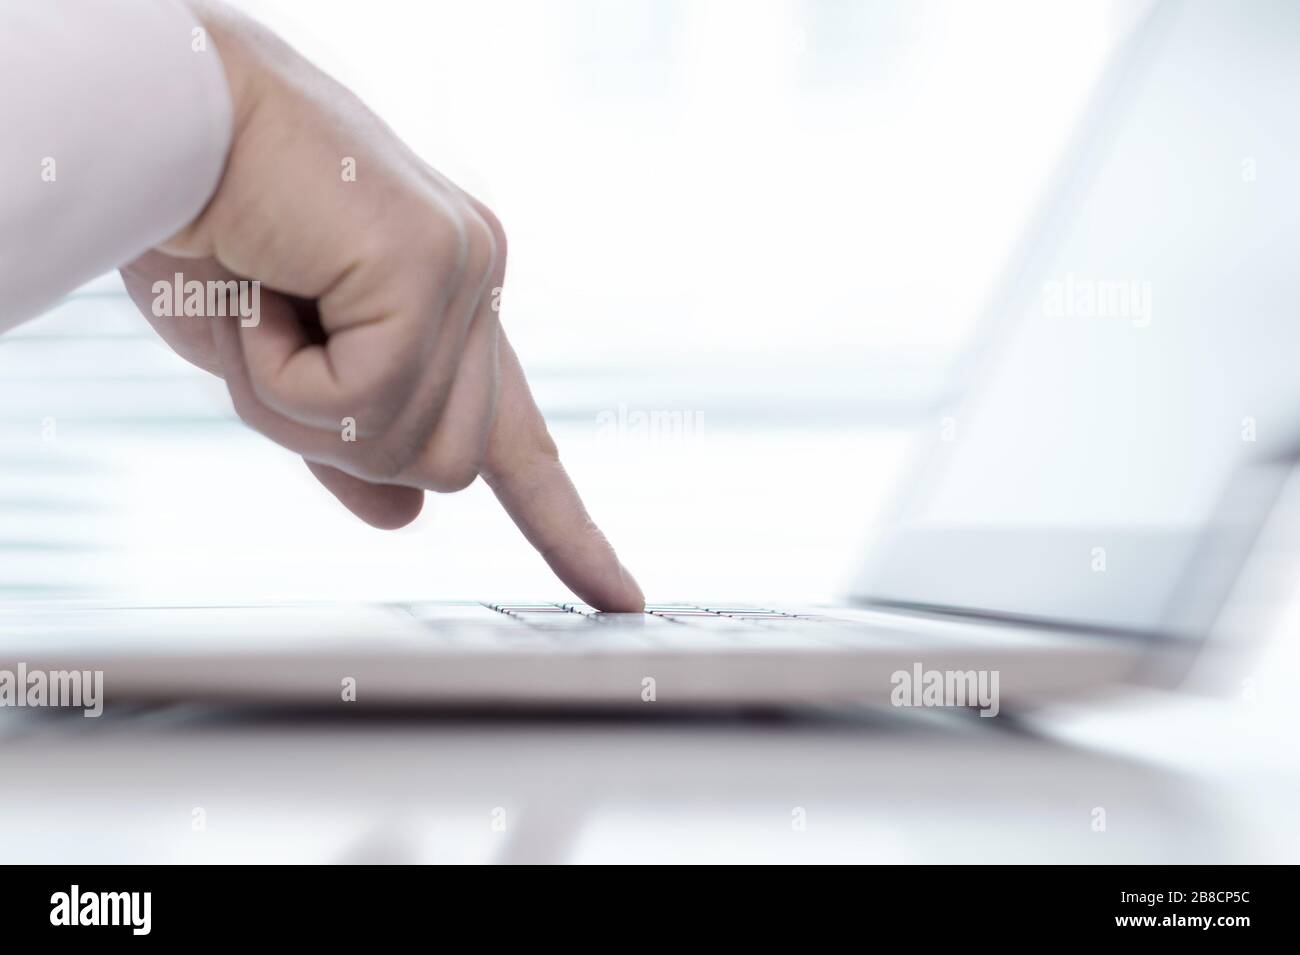 Un unico dito che preme il pulsante della tastiera nel computer portatile con sfondo sfocato. Un uomo indica i tasti con mano, la digitazione o toccando il computer. Foto Stock